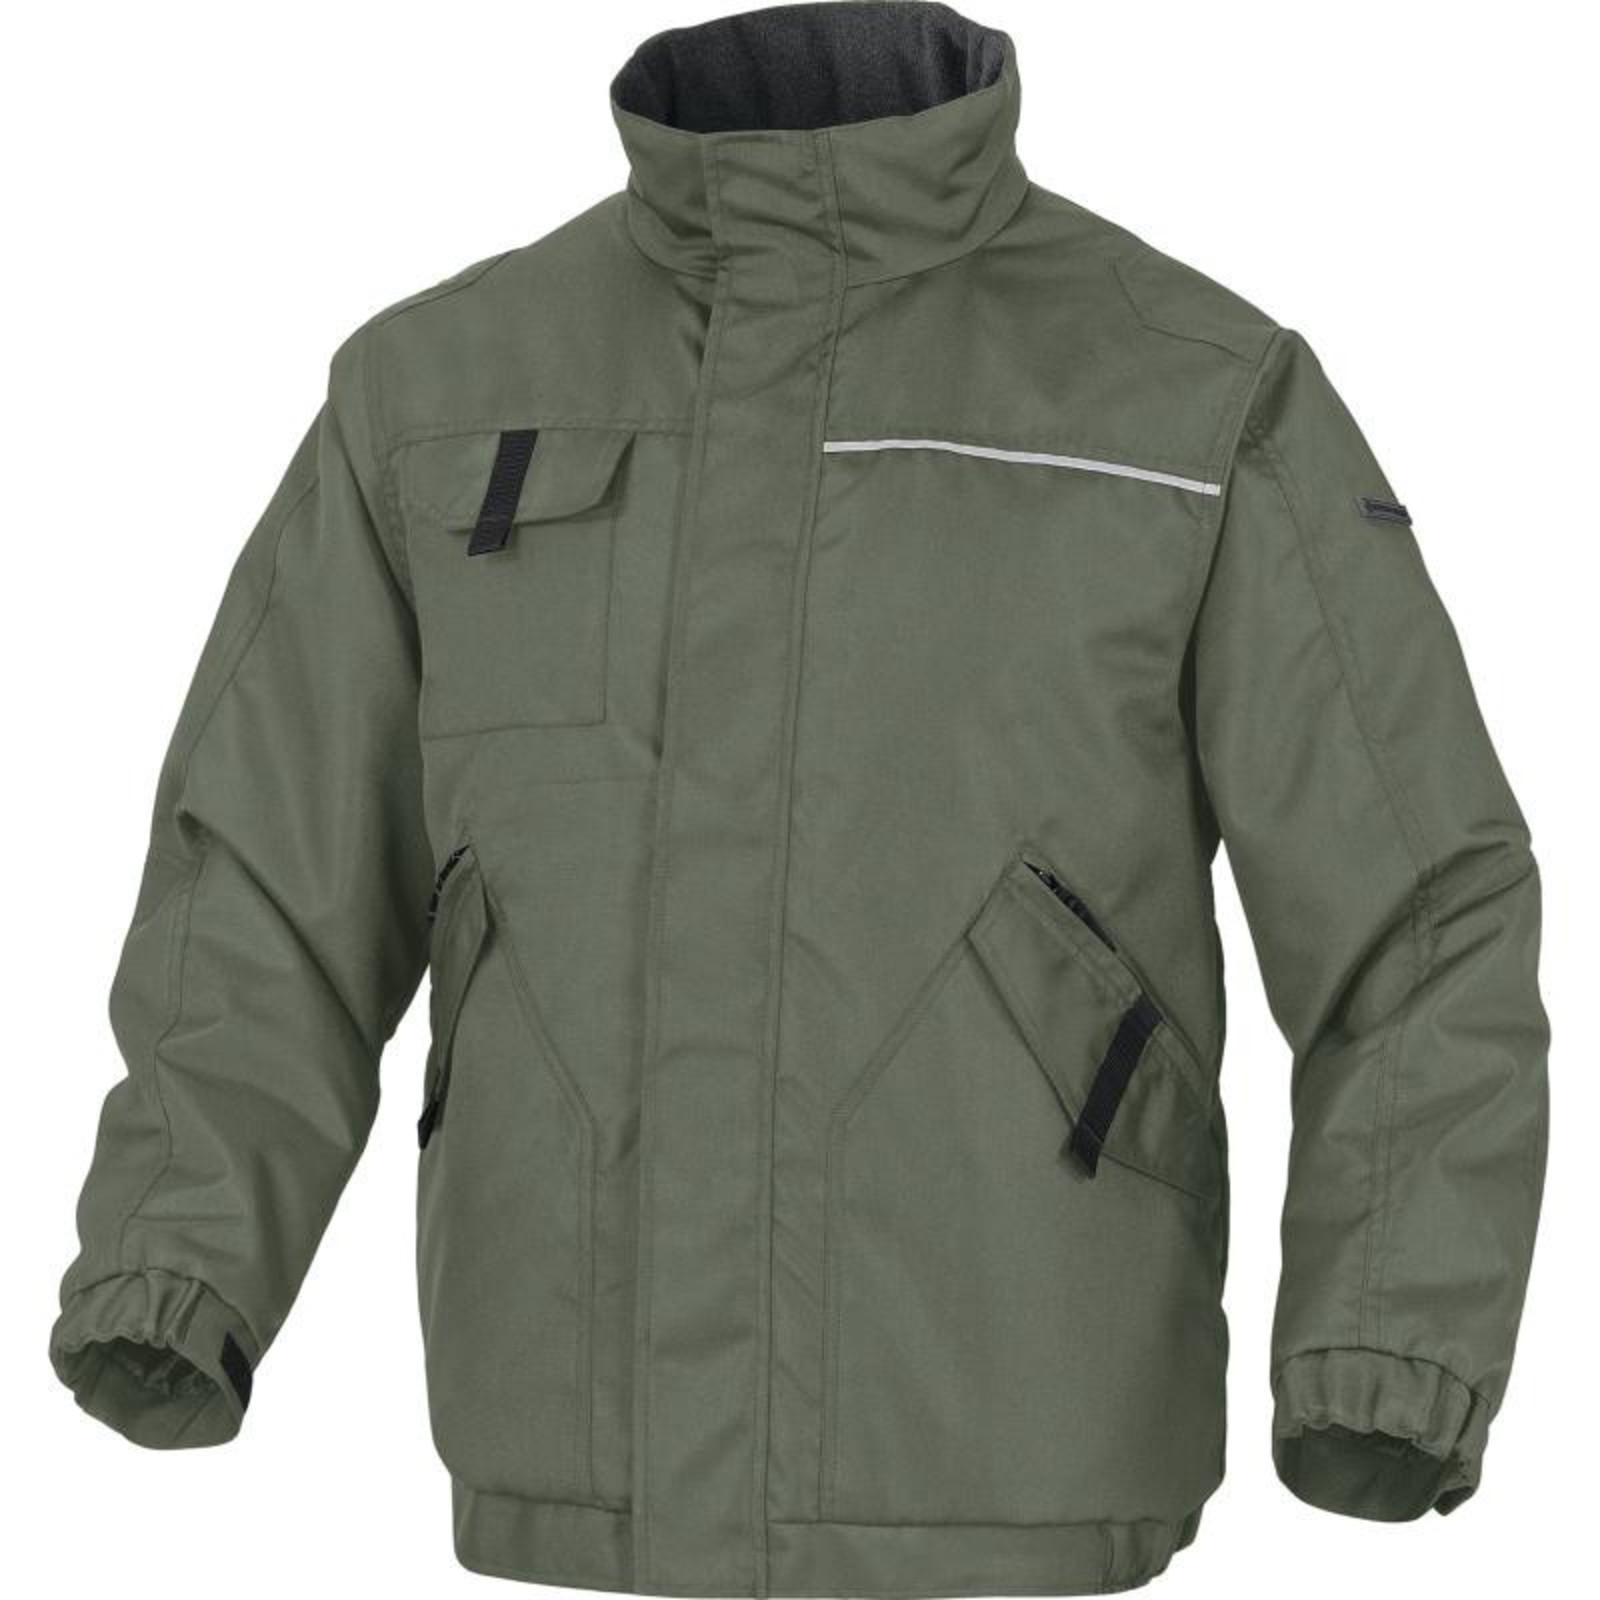 Zimná pracovná bunda Delta Plus Northwood2 - veľkosť: M, farba: zelená/čierna